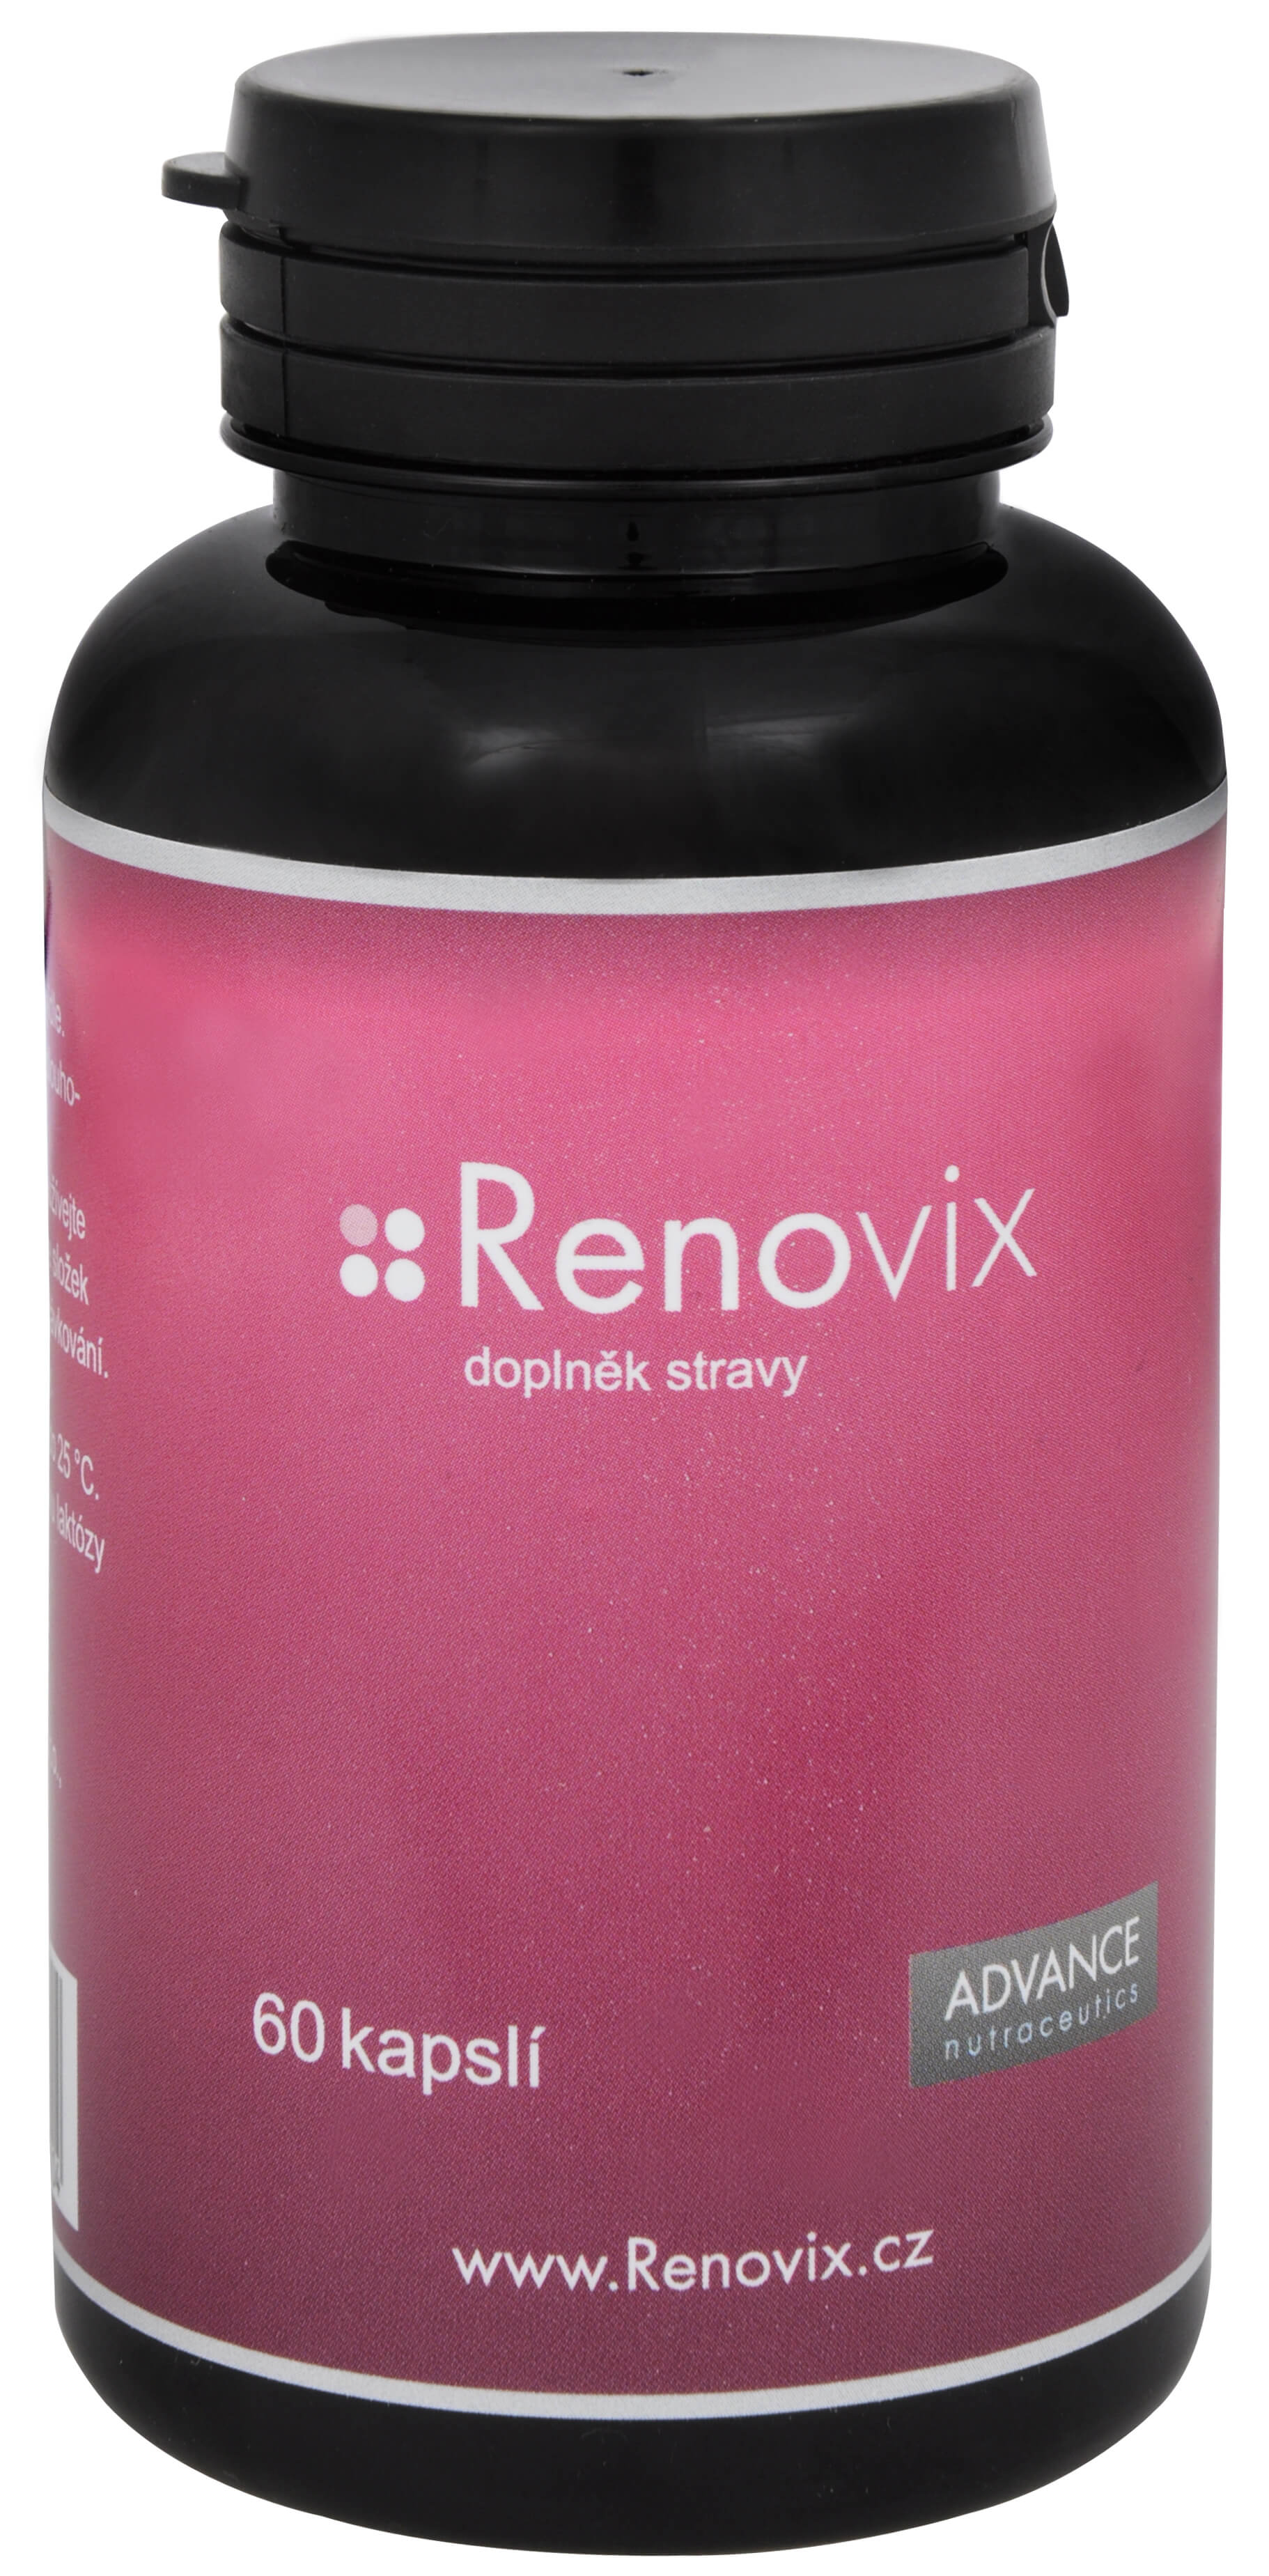 Zobrazit detail výrobku Advance nutraceutics Renovix 60 kapslí + 2 měsíce na vrácení zboží